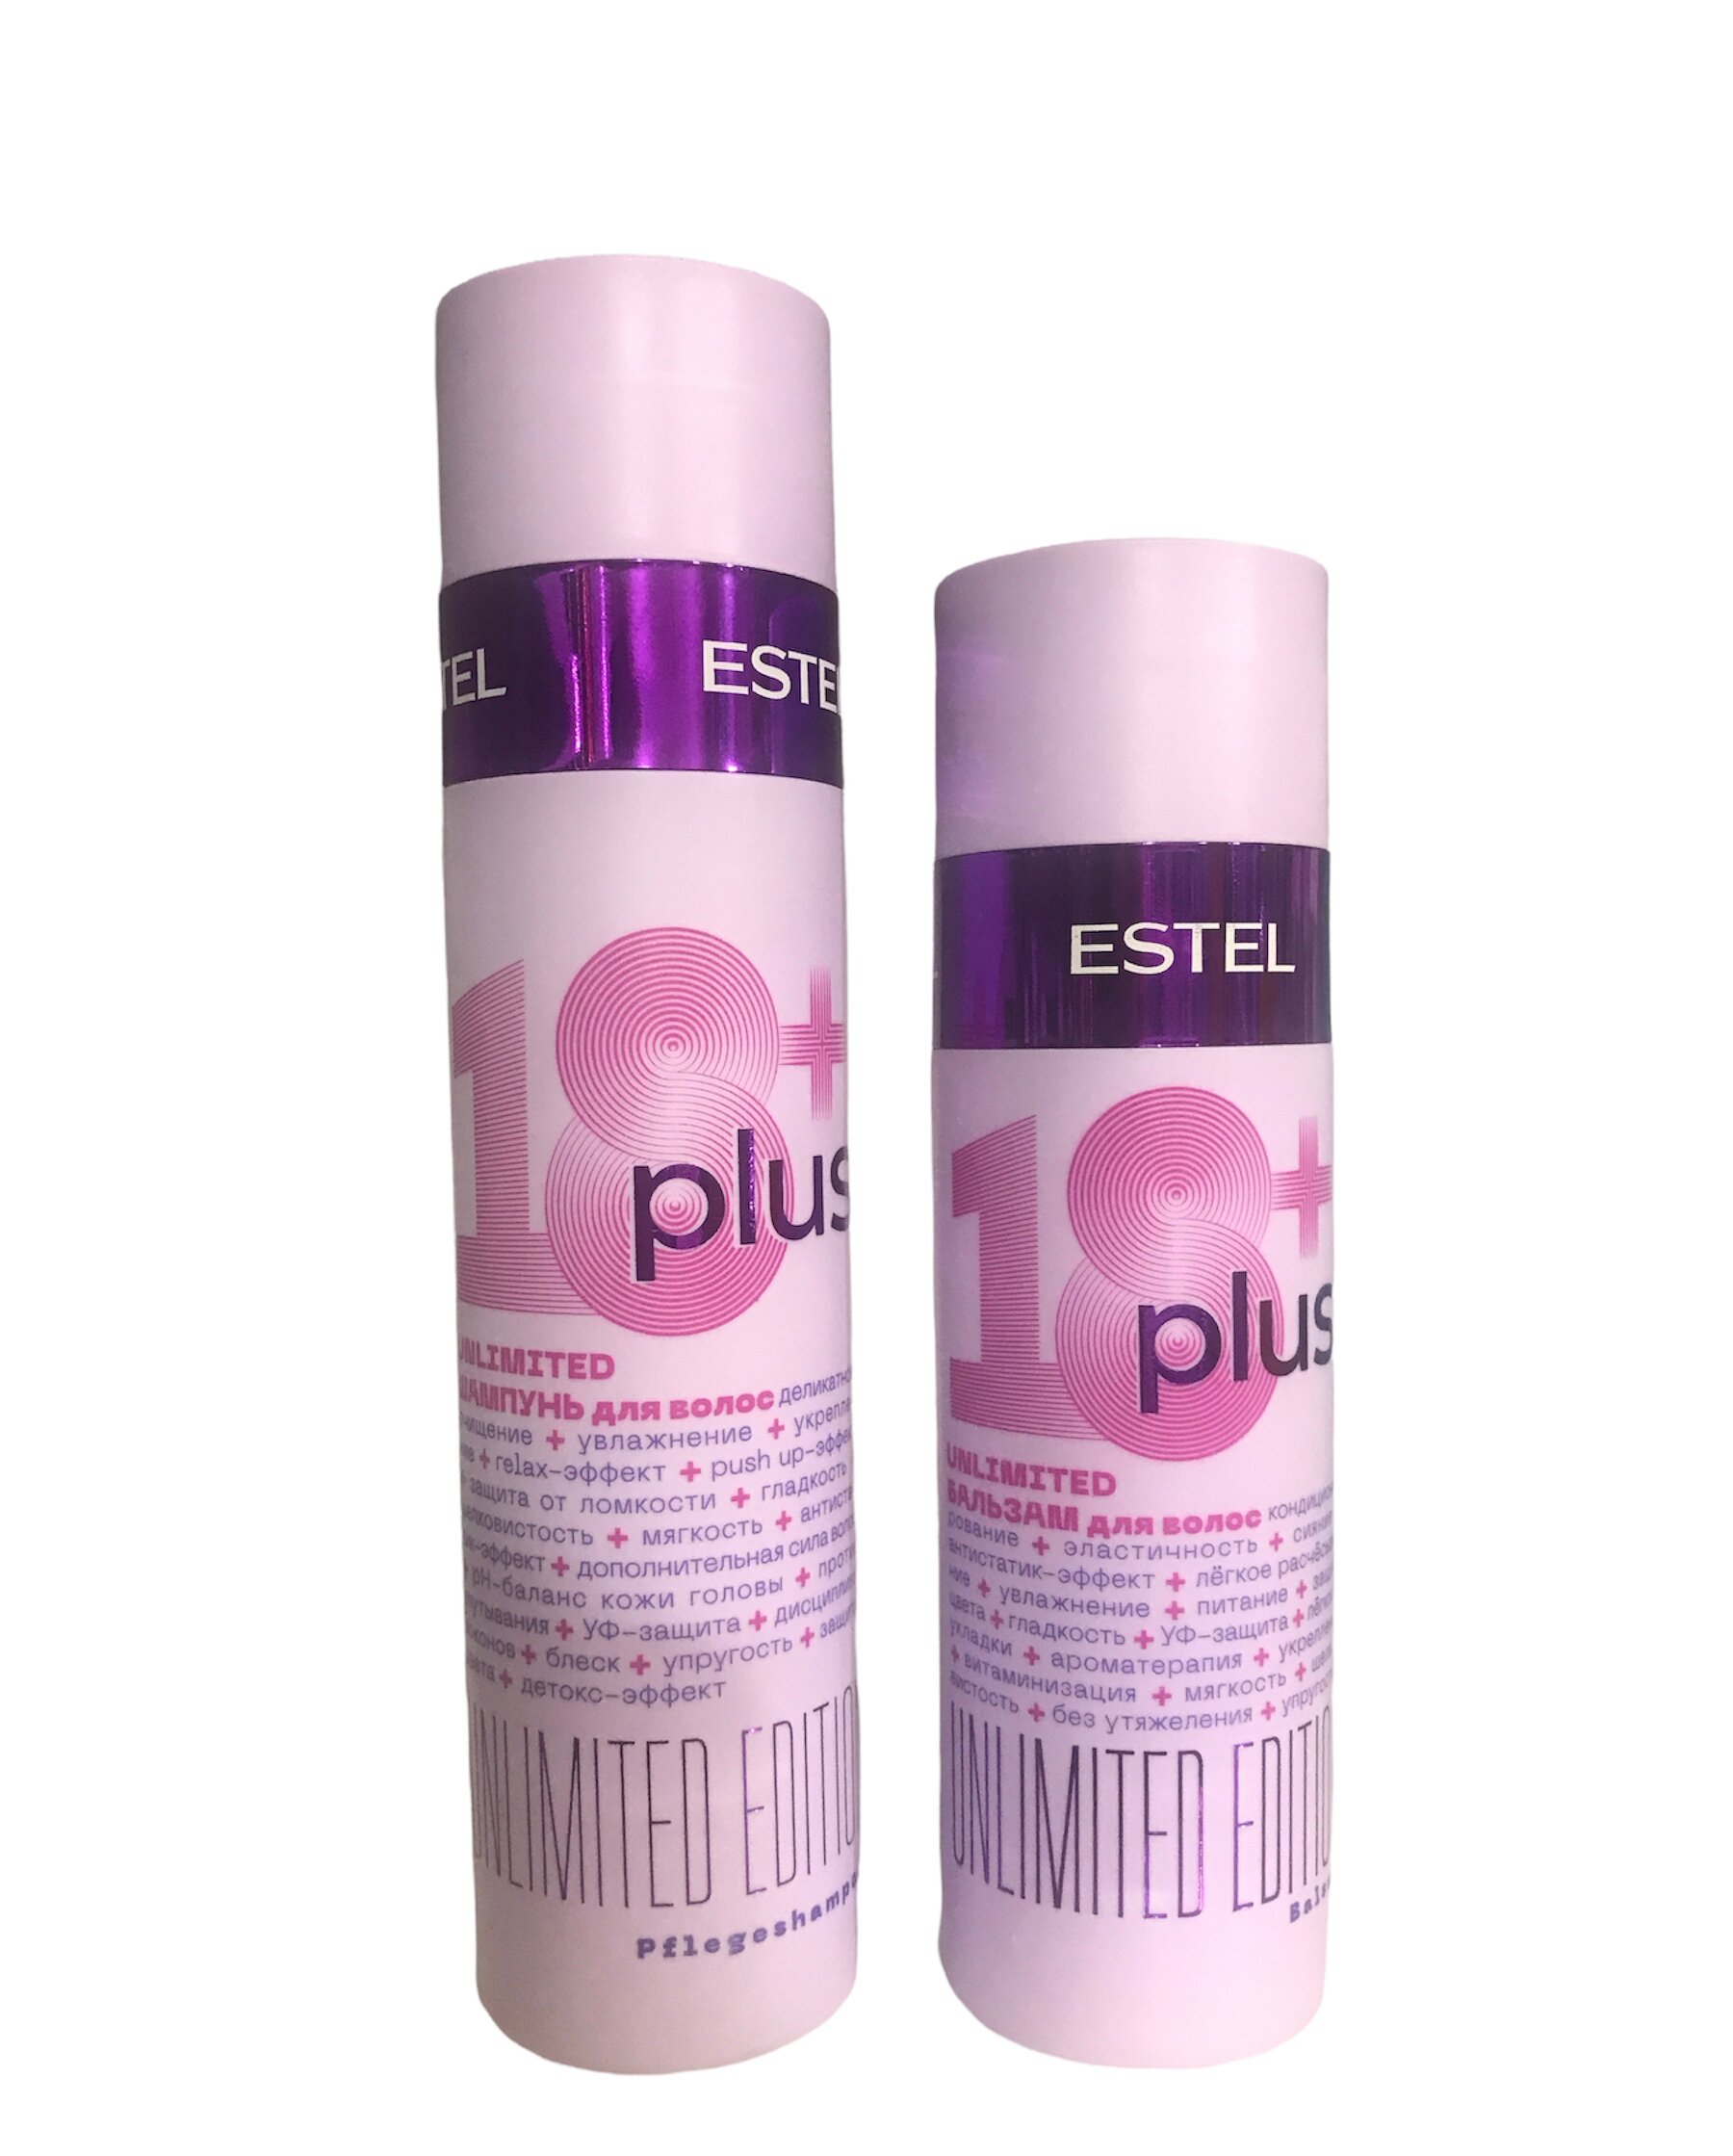 Набор ESTEL 18+ Plus набор для ухода за волосами шампунь 250 мл + бальзам 200 мл набор estel обесцвечивающая пудра для волос эстель ultra blond 30 г 3 шт